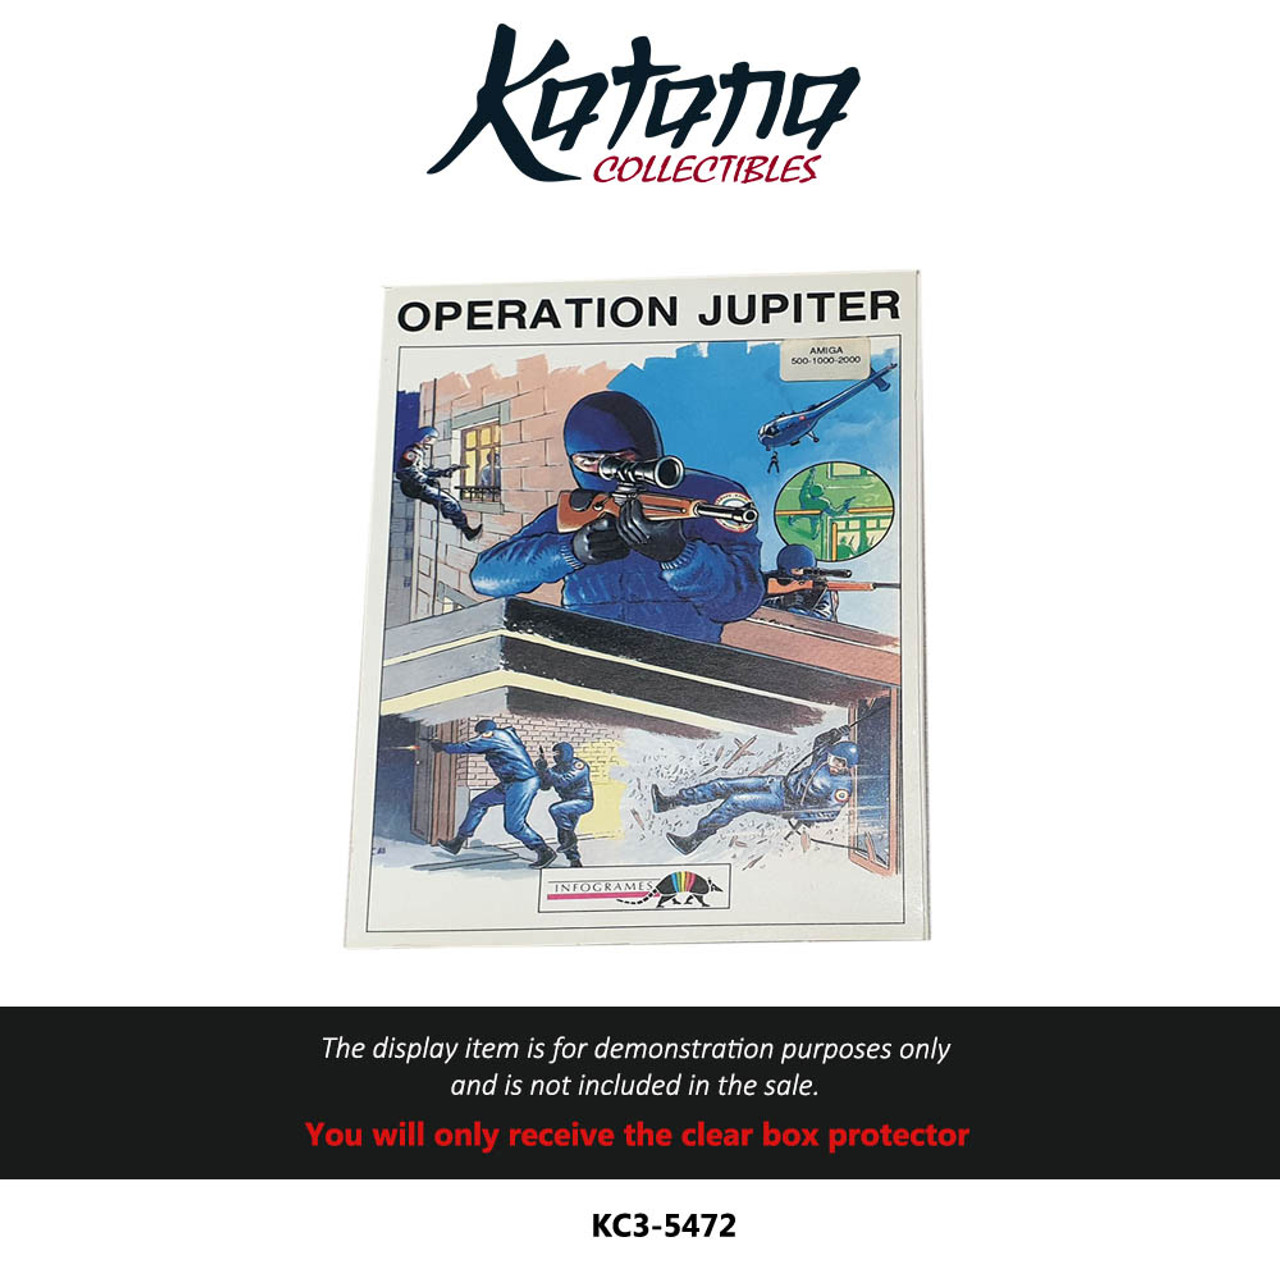 Katana Collectibles Protector For Operation Jupiter Amiga